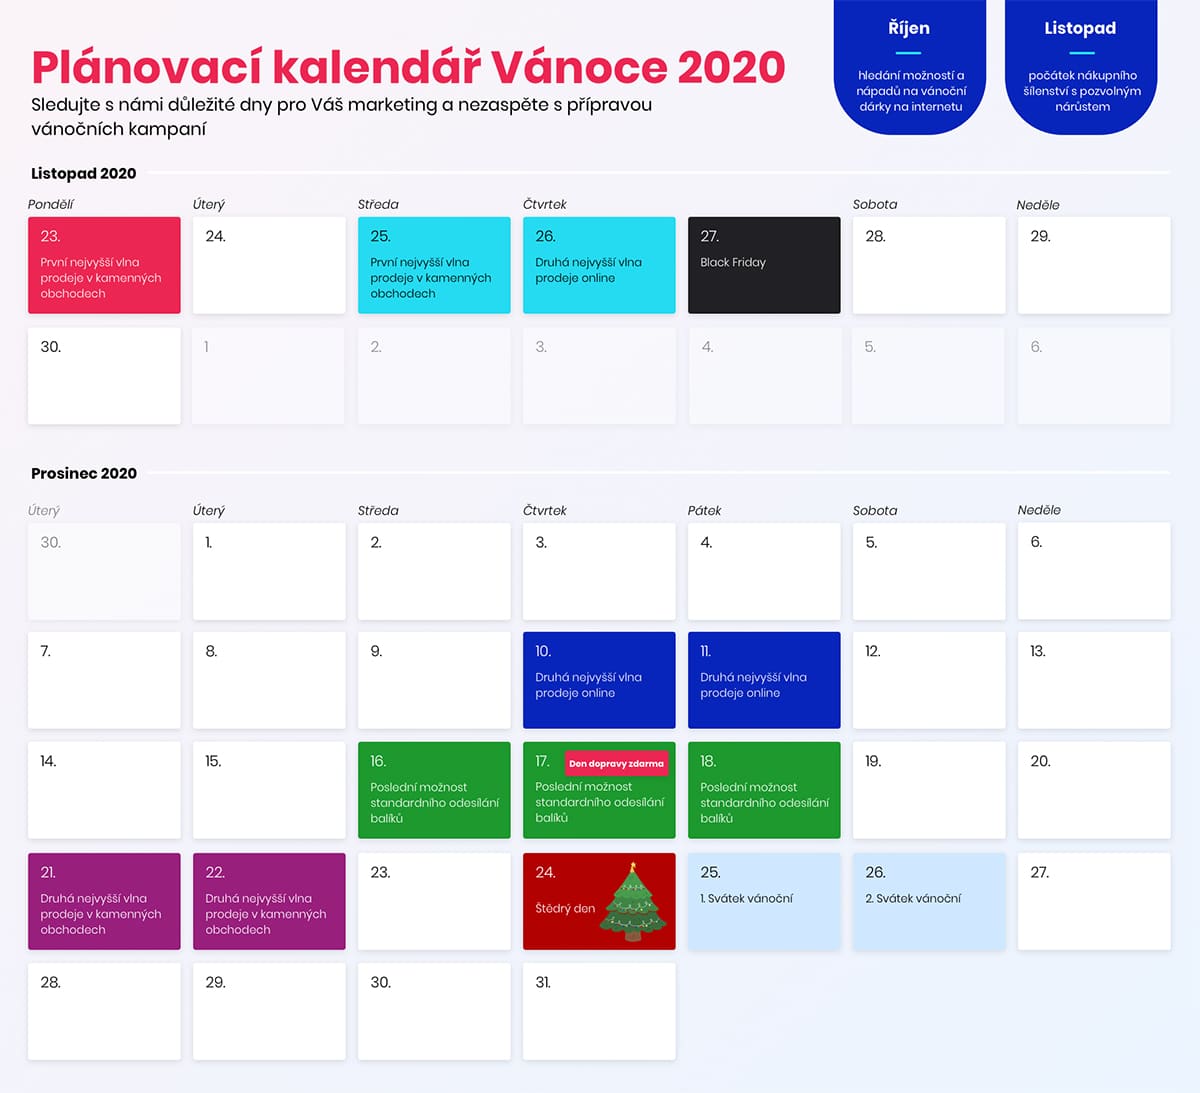 Plánovací kalendář reklam na Vánoce 2020 od Zest Brand Tábor